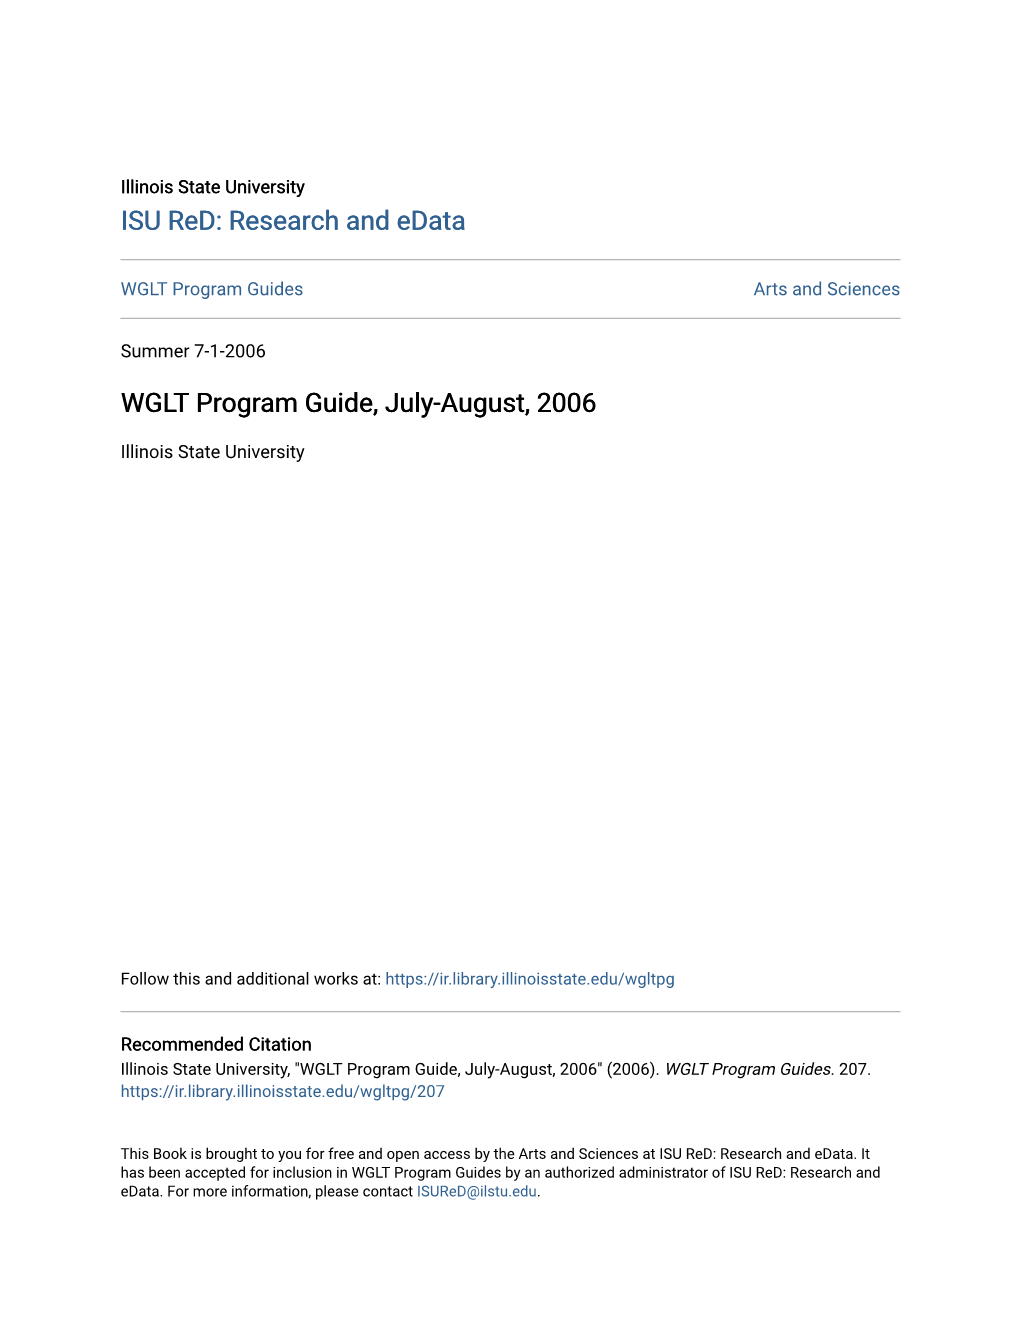 WGLT Program Guide, July-August, 2006